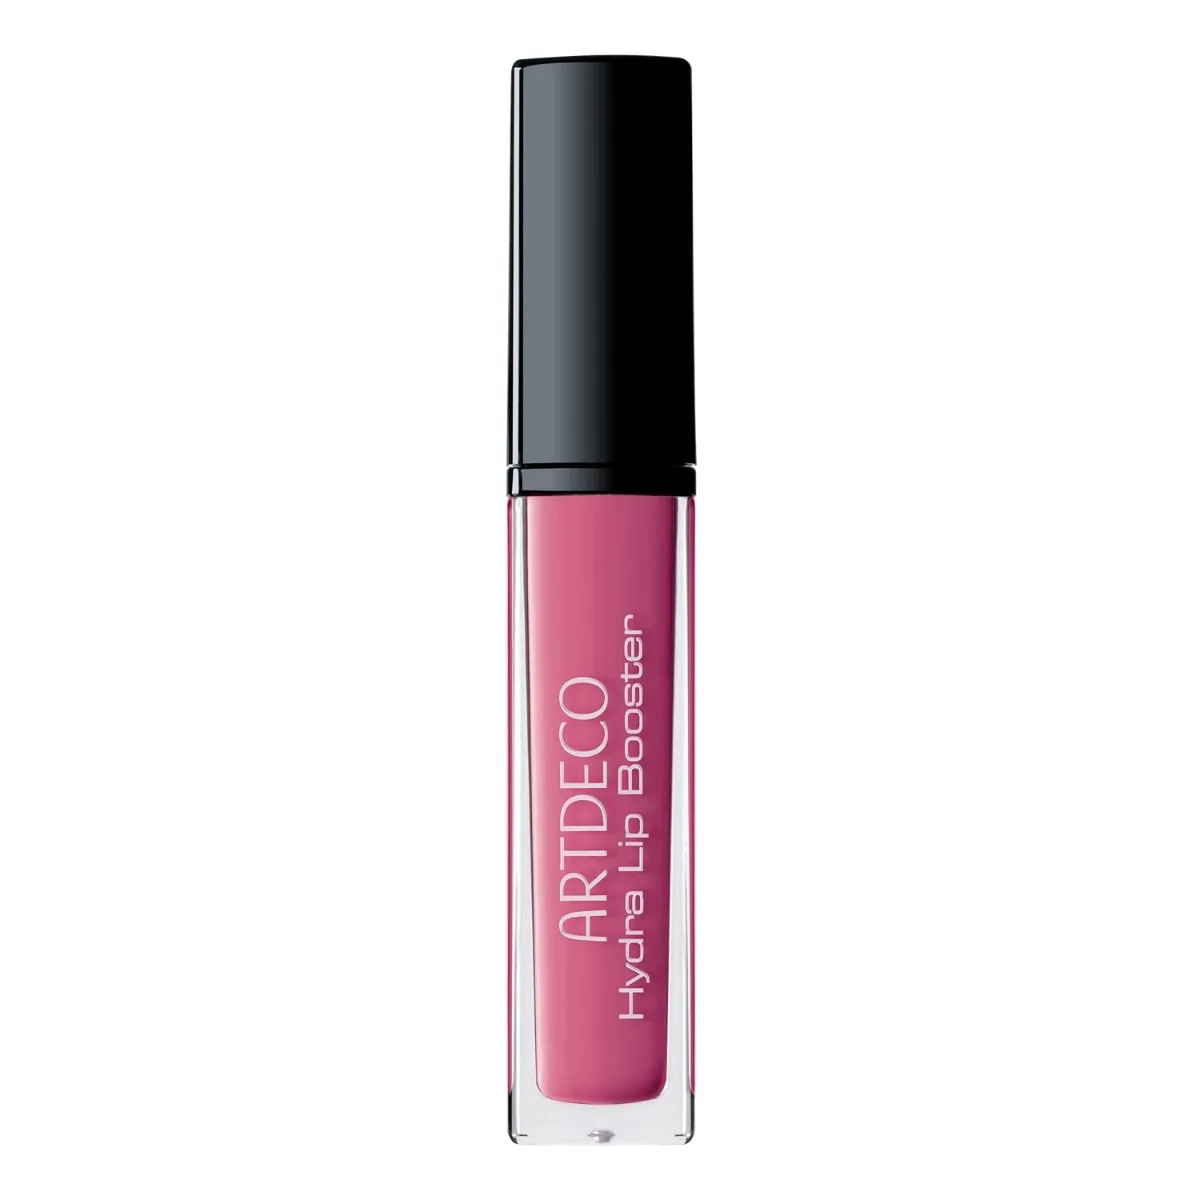 ARTDECO Hydra Lip Booster nawilżająco-pielęgnujący błyszczyk do ust, 55 Translucent Hot Pink, 6 ml